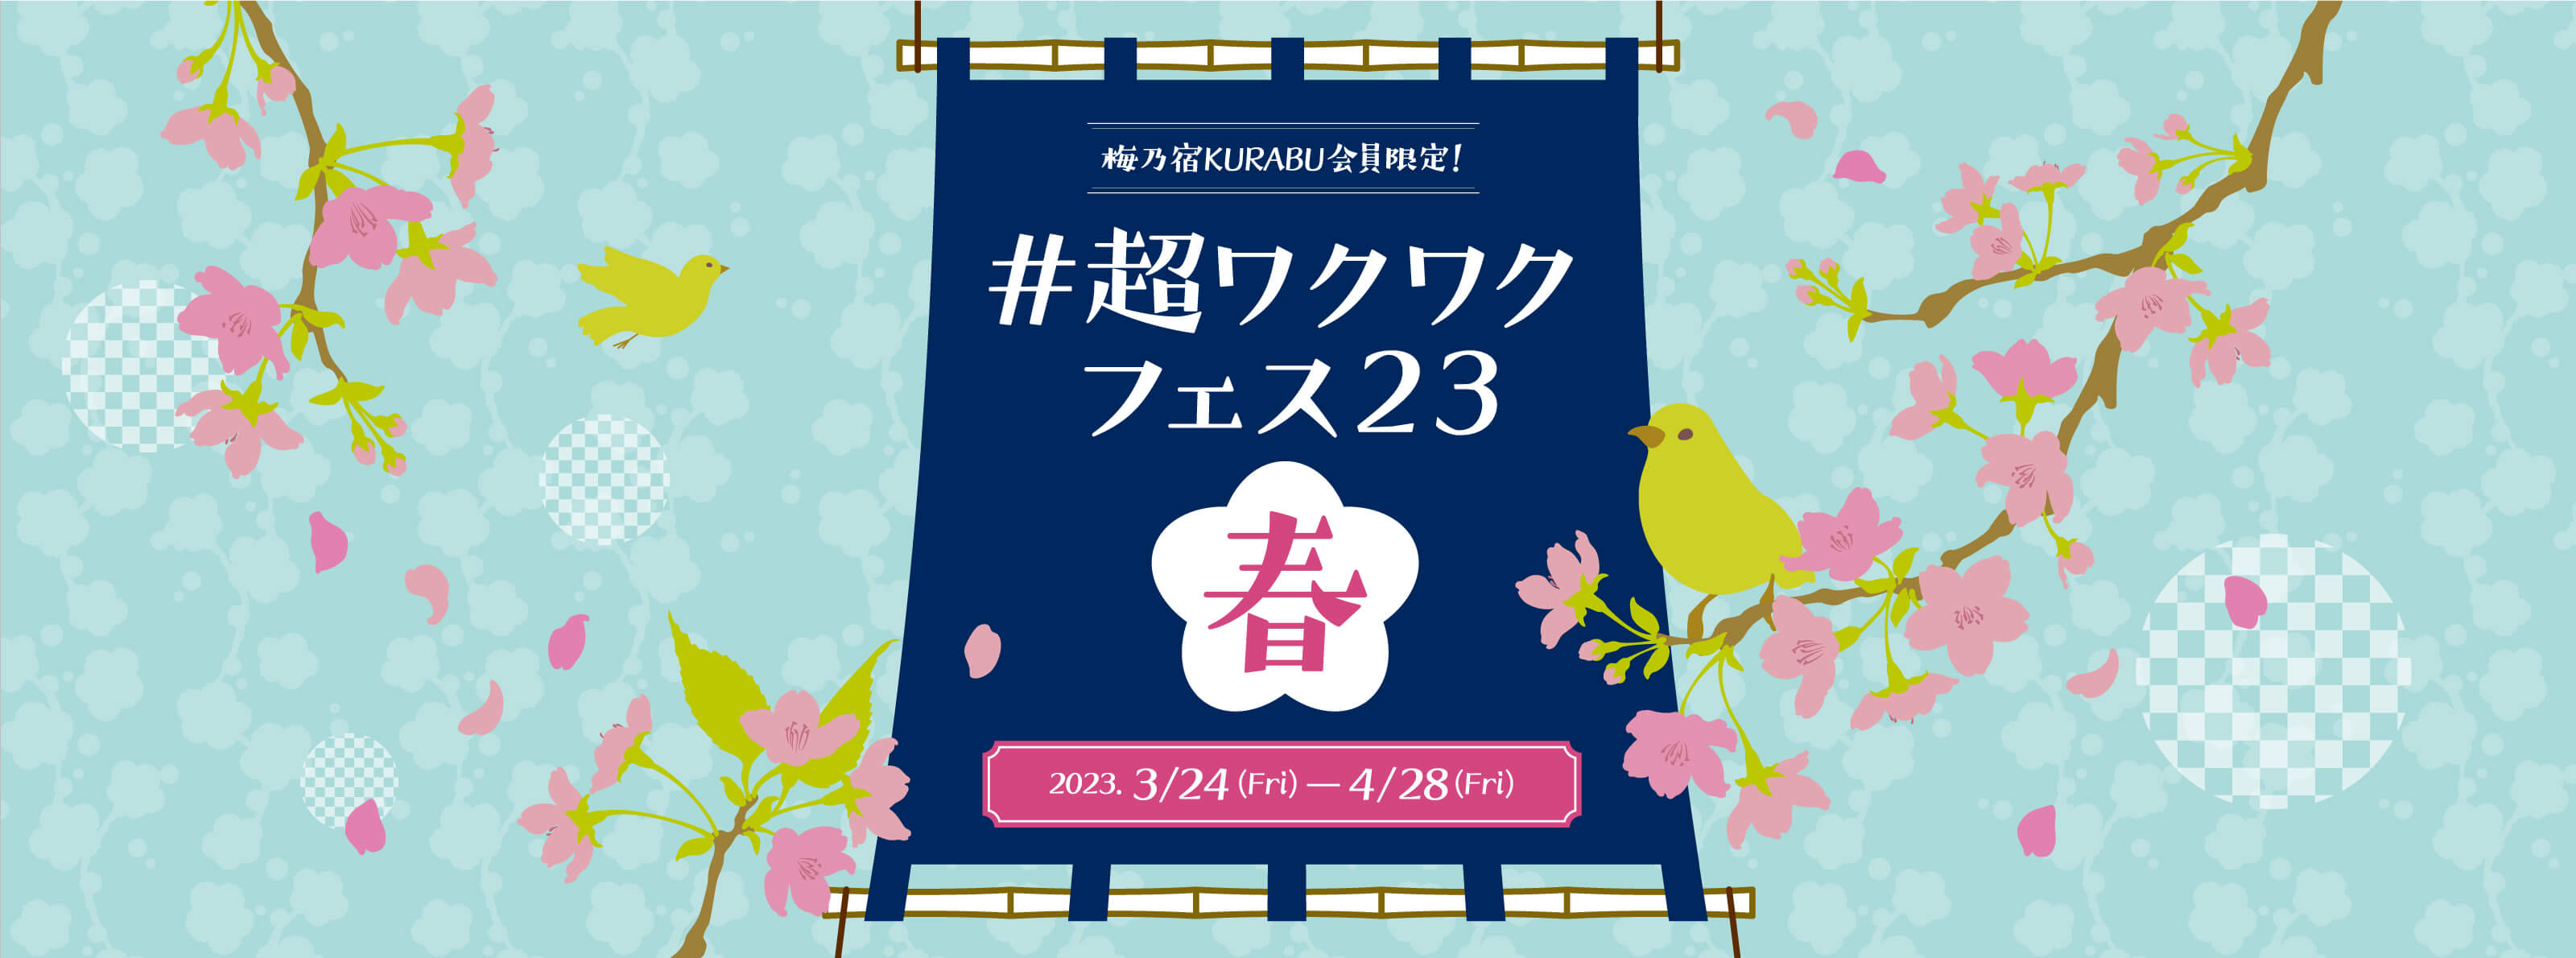 梅乃宿KURABU会員限定! #超ワクワクフェス23 春 2023.3/24(Fri)-4/28(Fri)